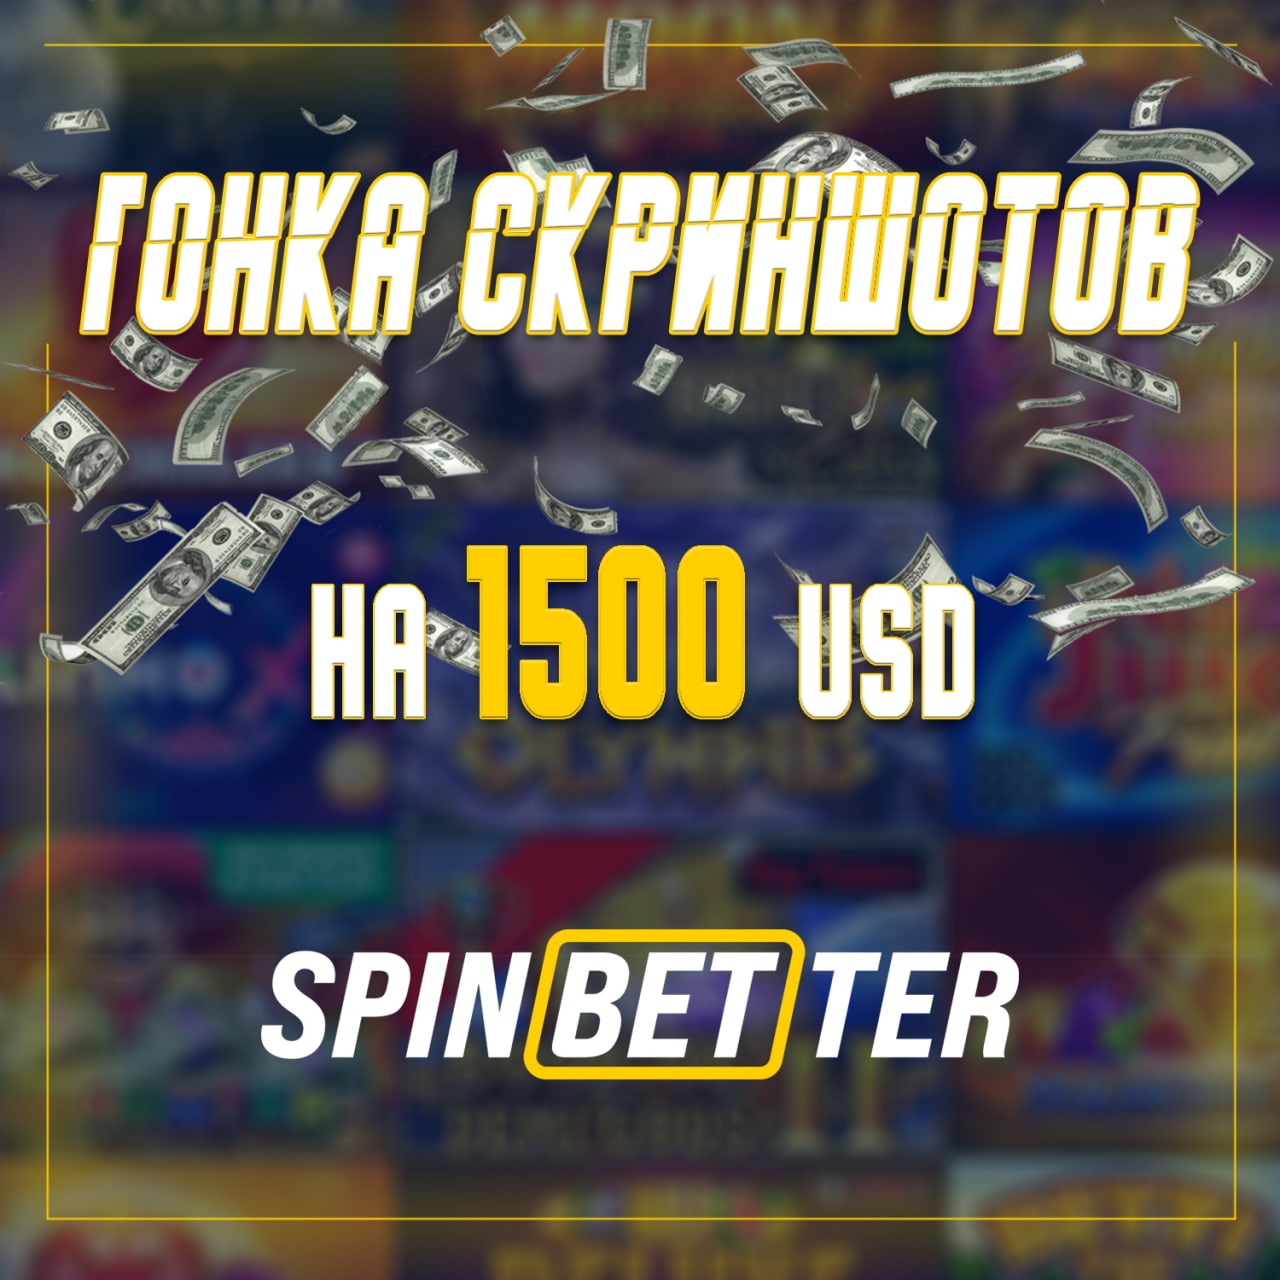 Spinbetter casino buzz